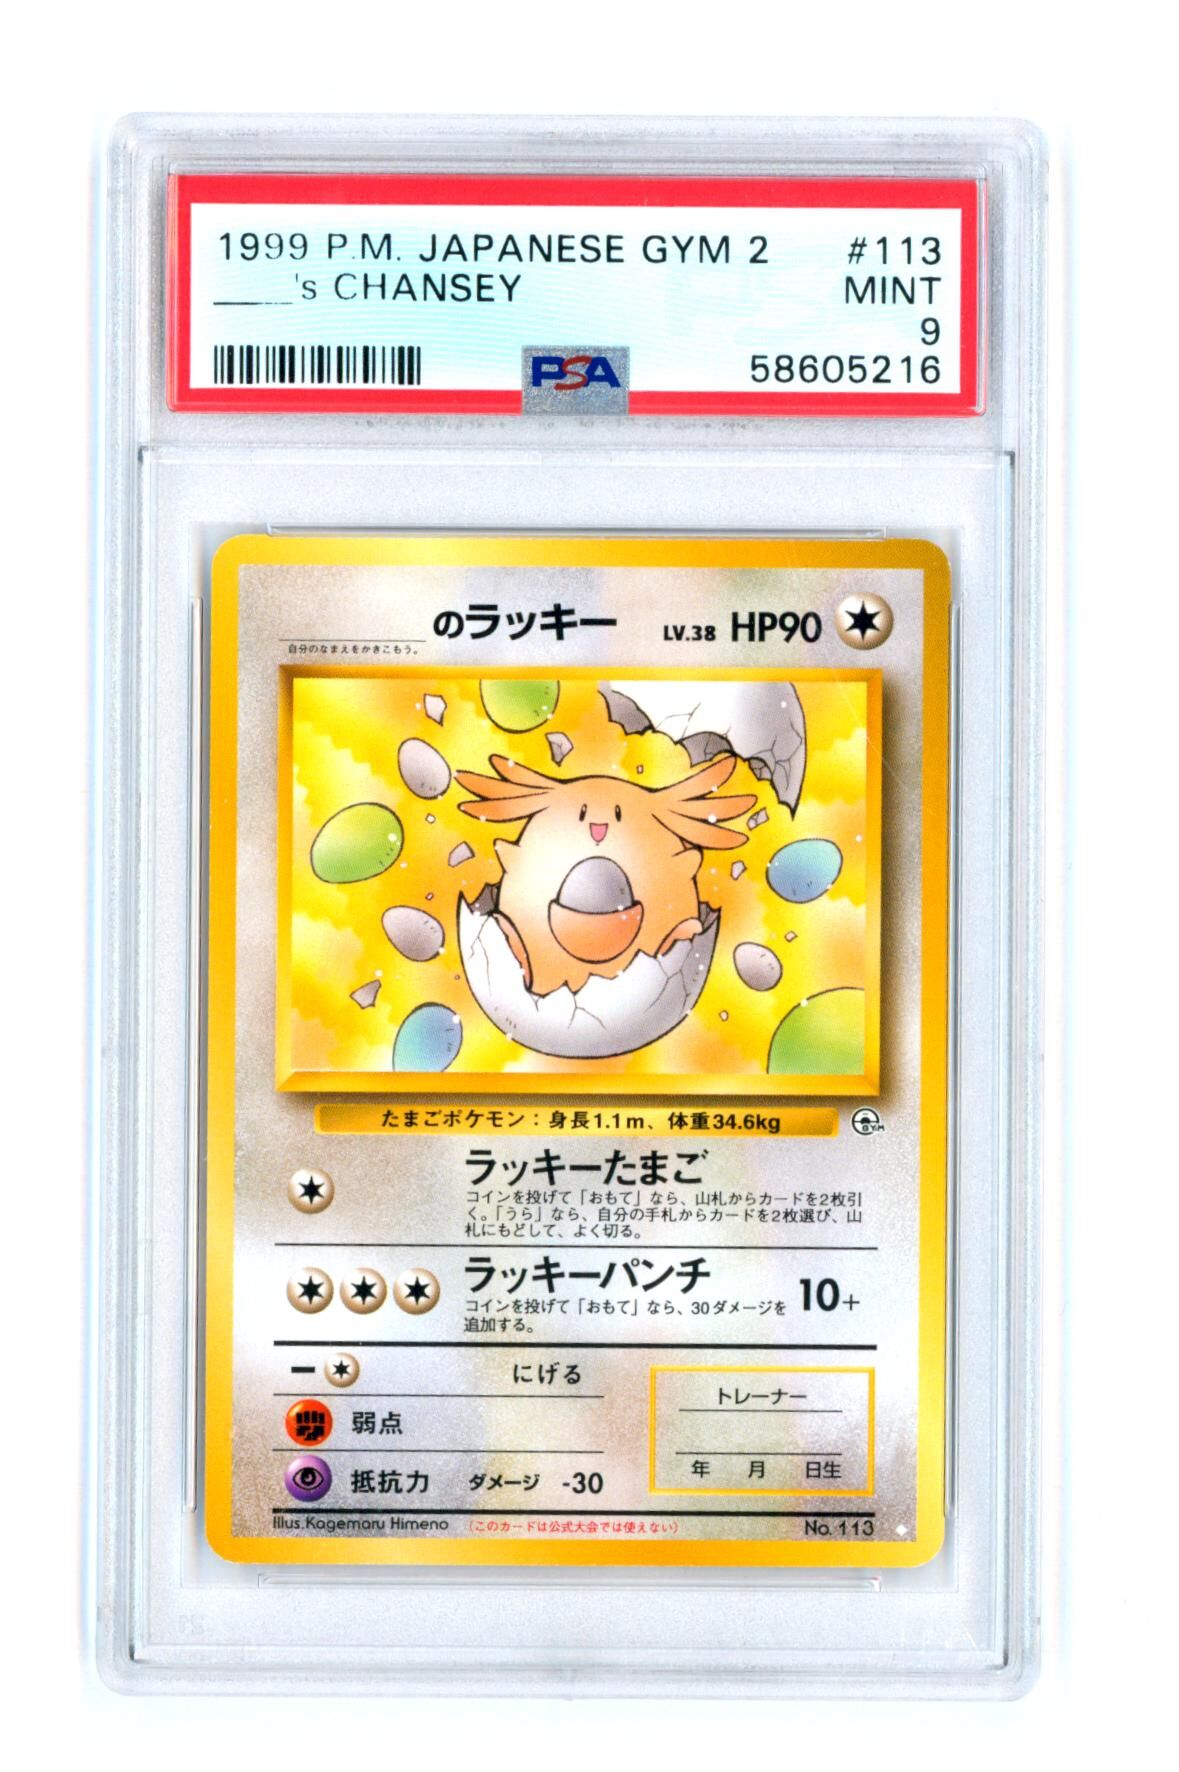 Chansey #113 - Japanese Gym 2 - PSA 9 MINT - Pokémon